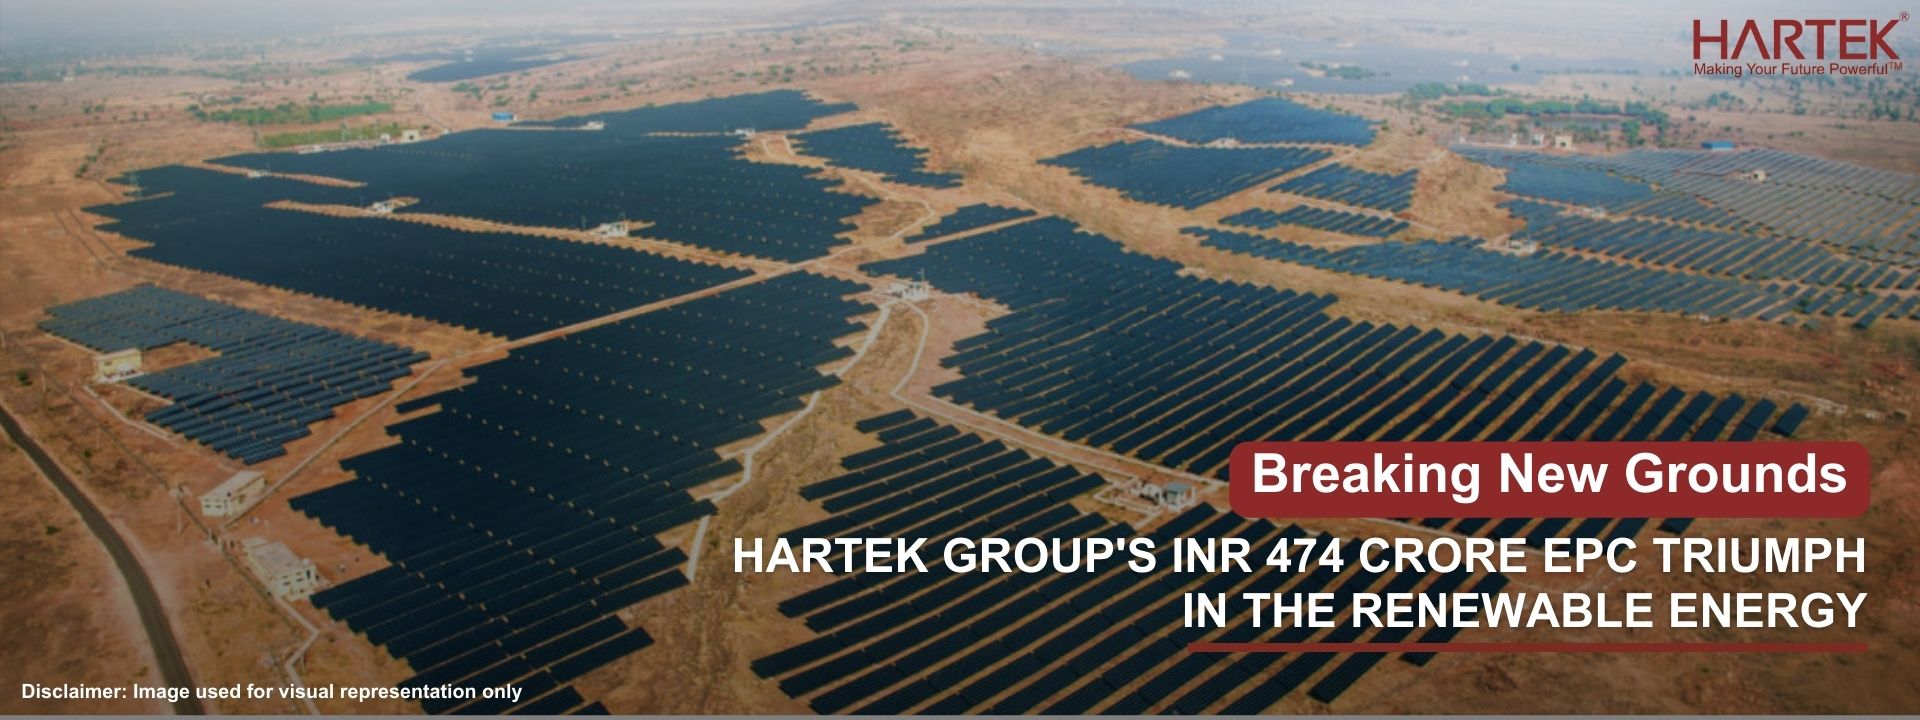 Hartek Group secures landmark INR 474 Crore Solar PV Project in Rajasthan